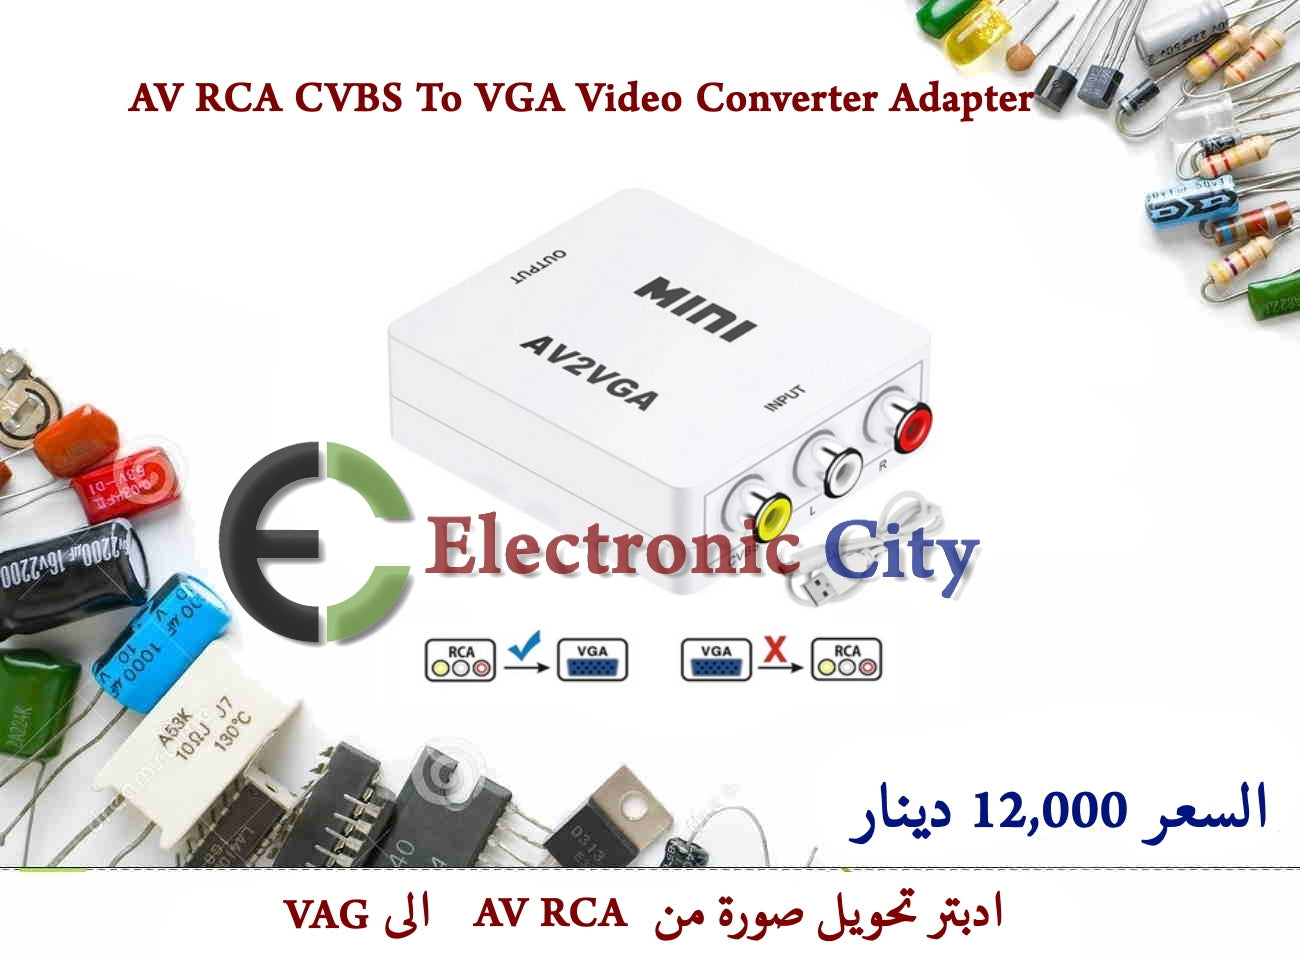 AV RCA CVBS To VGA Video Converter Adapter